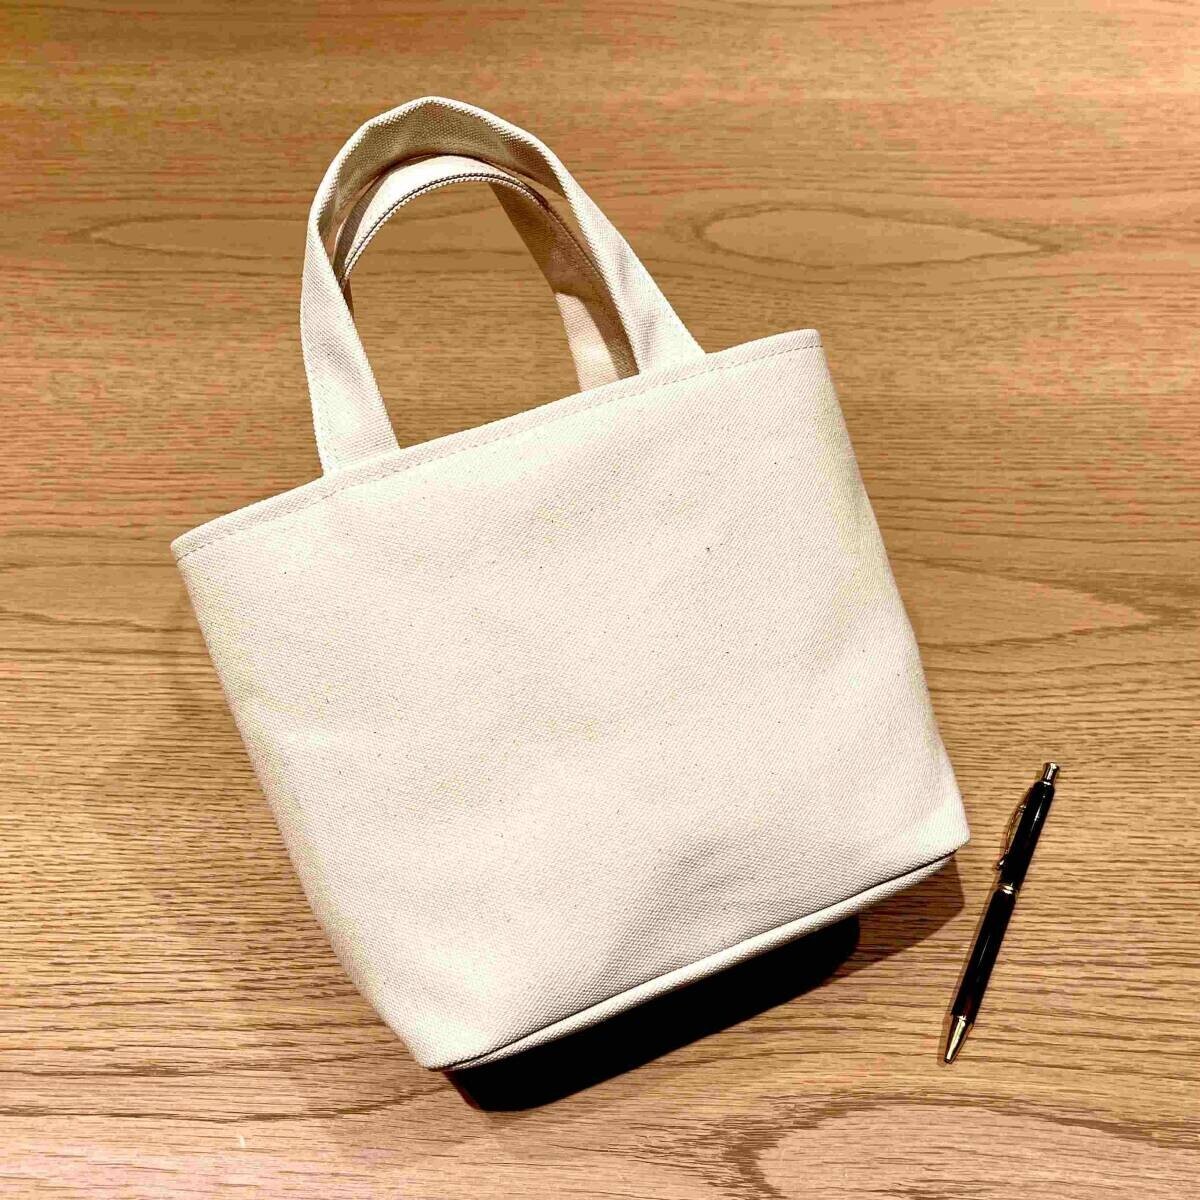 「豊岡鞄」オフィシャルショップ Artisanが10周年記念ロゴを大募集。